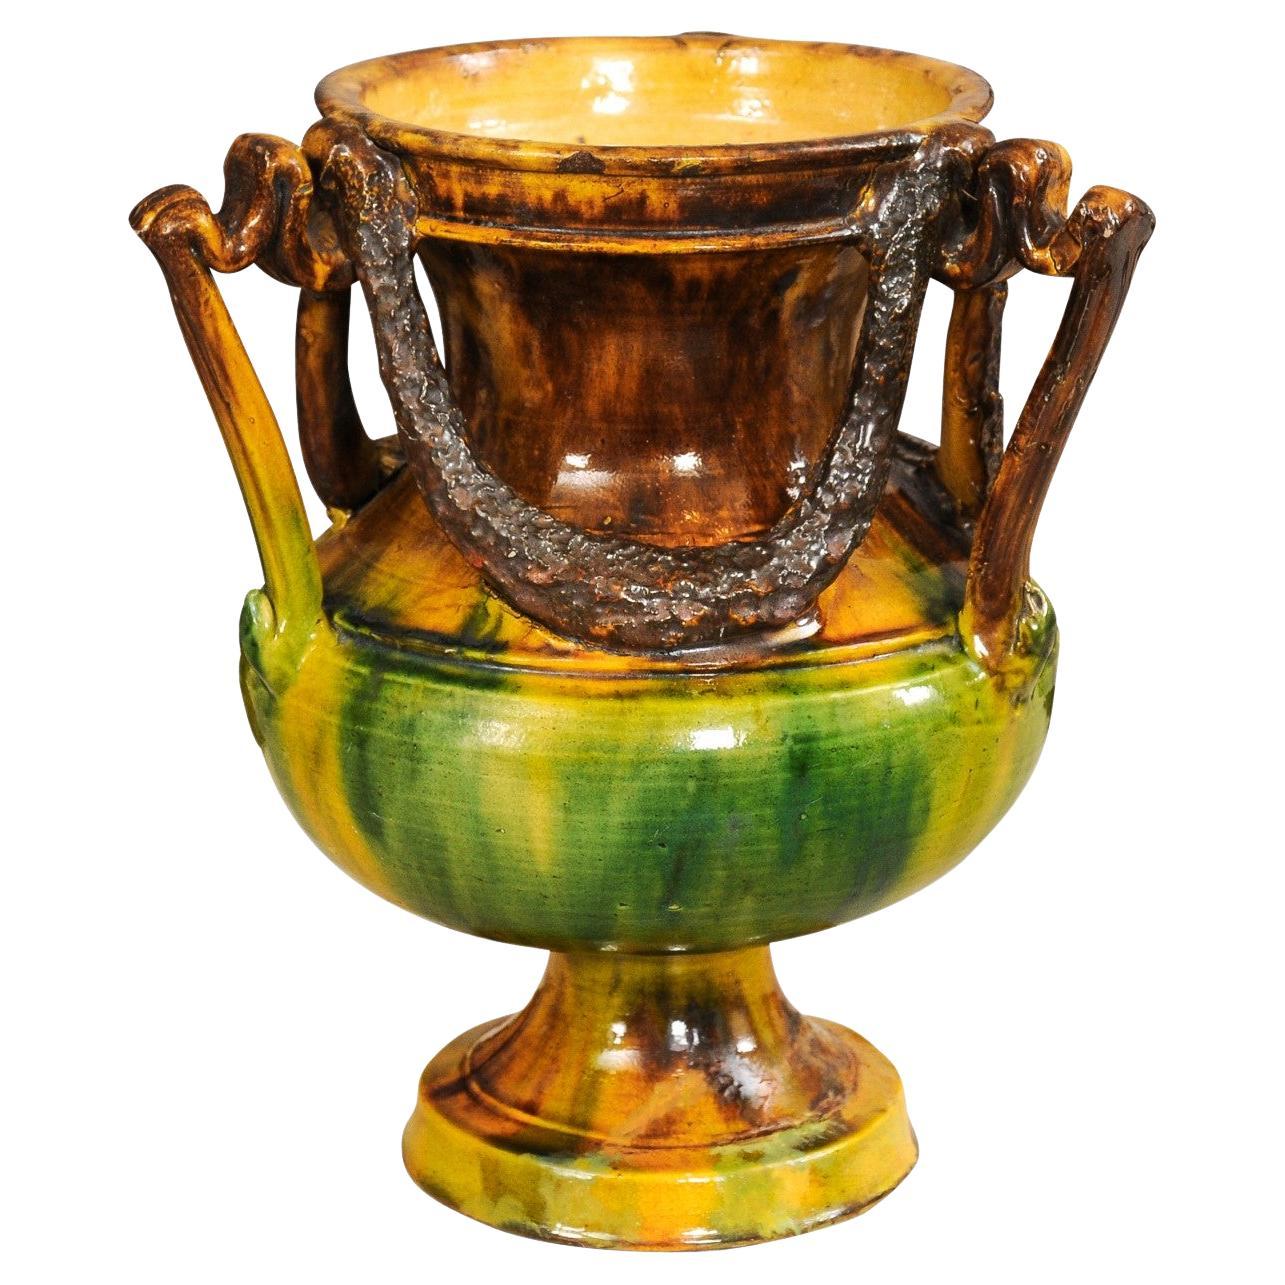 Vase d'Anduze à glaçure multicolore et à motifs de guirlandes, de style classique français du 19e siècle